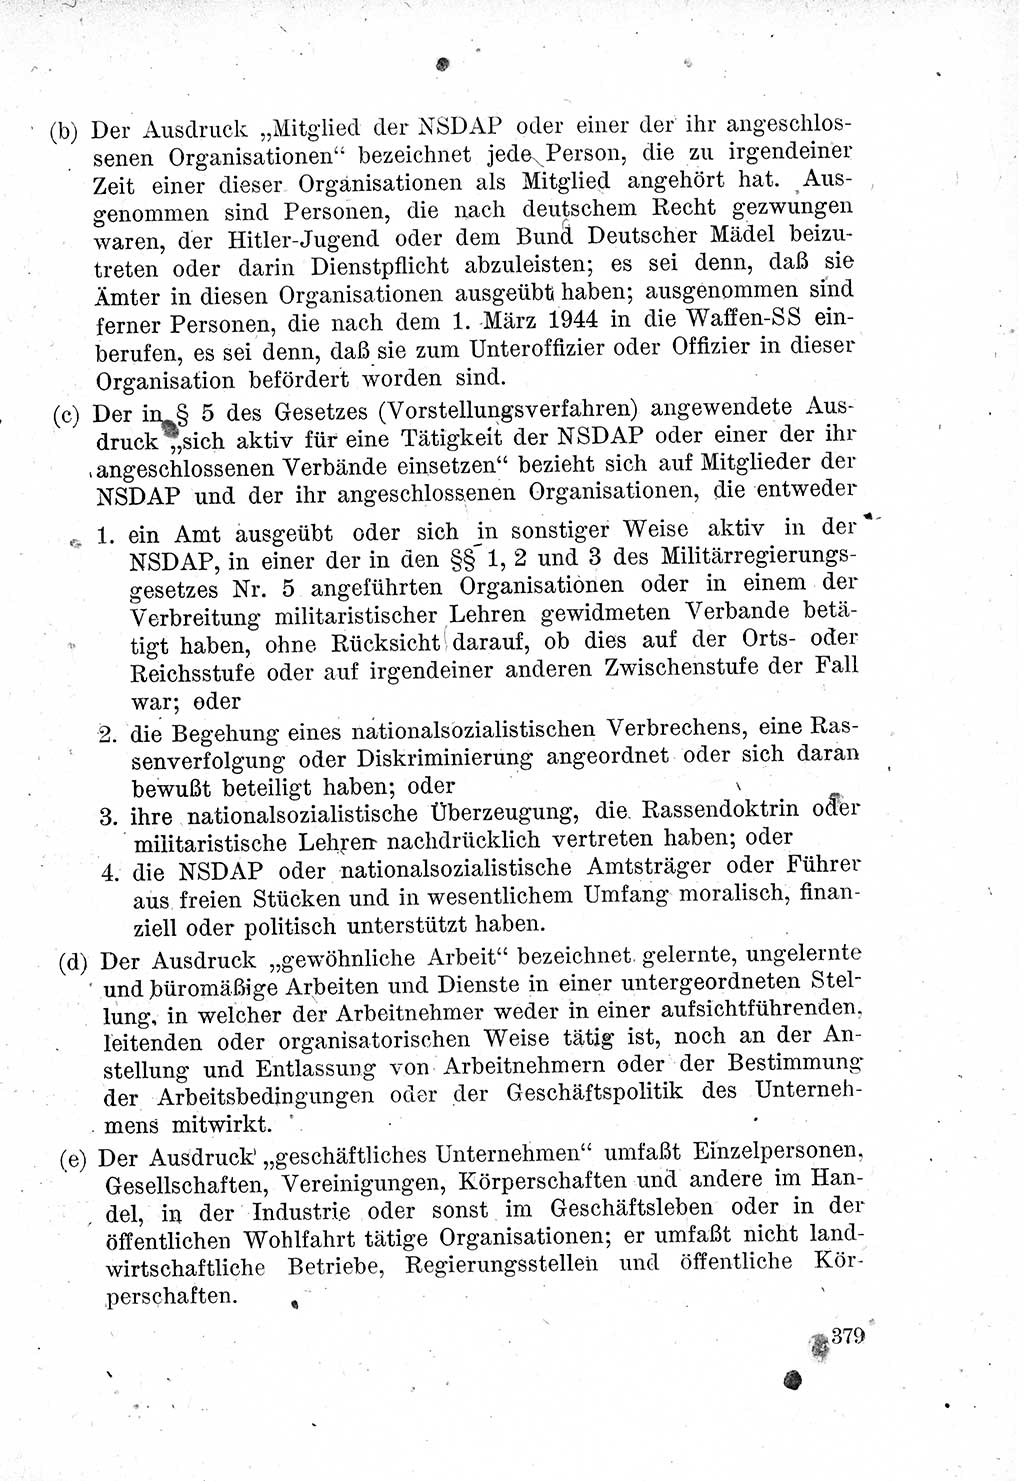 Das Recht der Besatzungsmacht (Deutschland), Proklamationen, Deklerationen, Verordnungen, Gesetze und Bekanntmachungen 1947, Seite 379 (R. Bes. Dtl. 1947, S. 379)